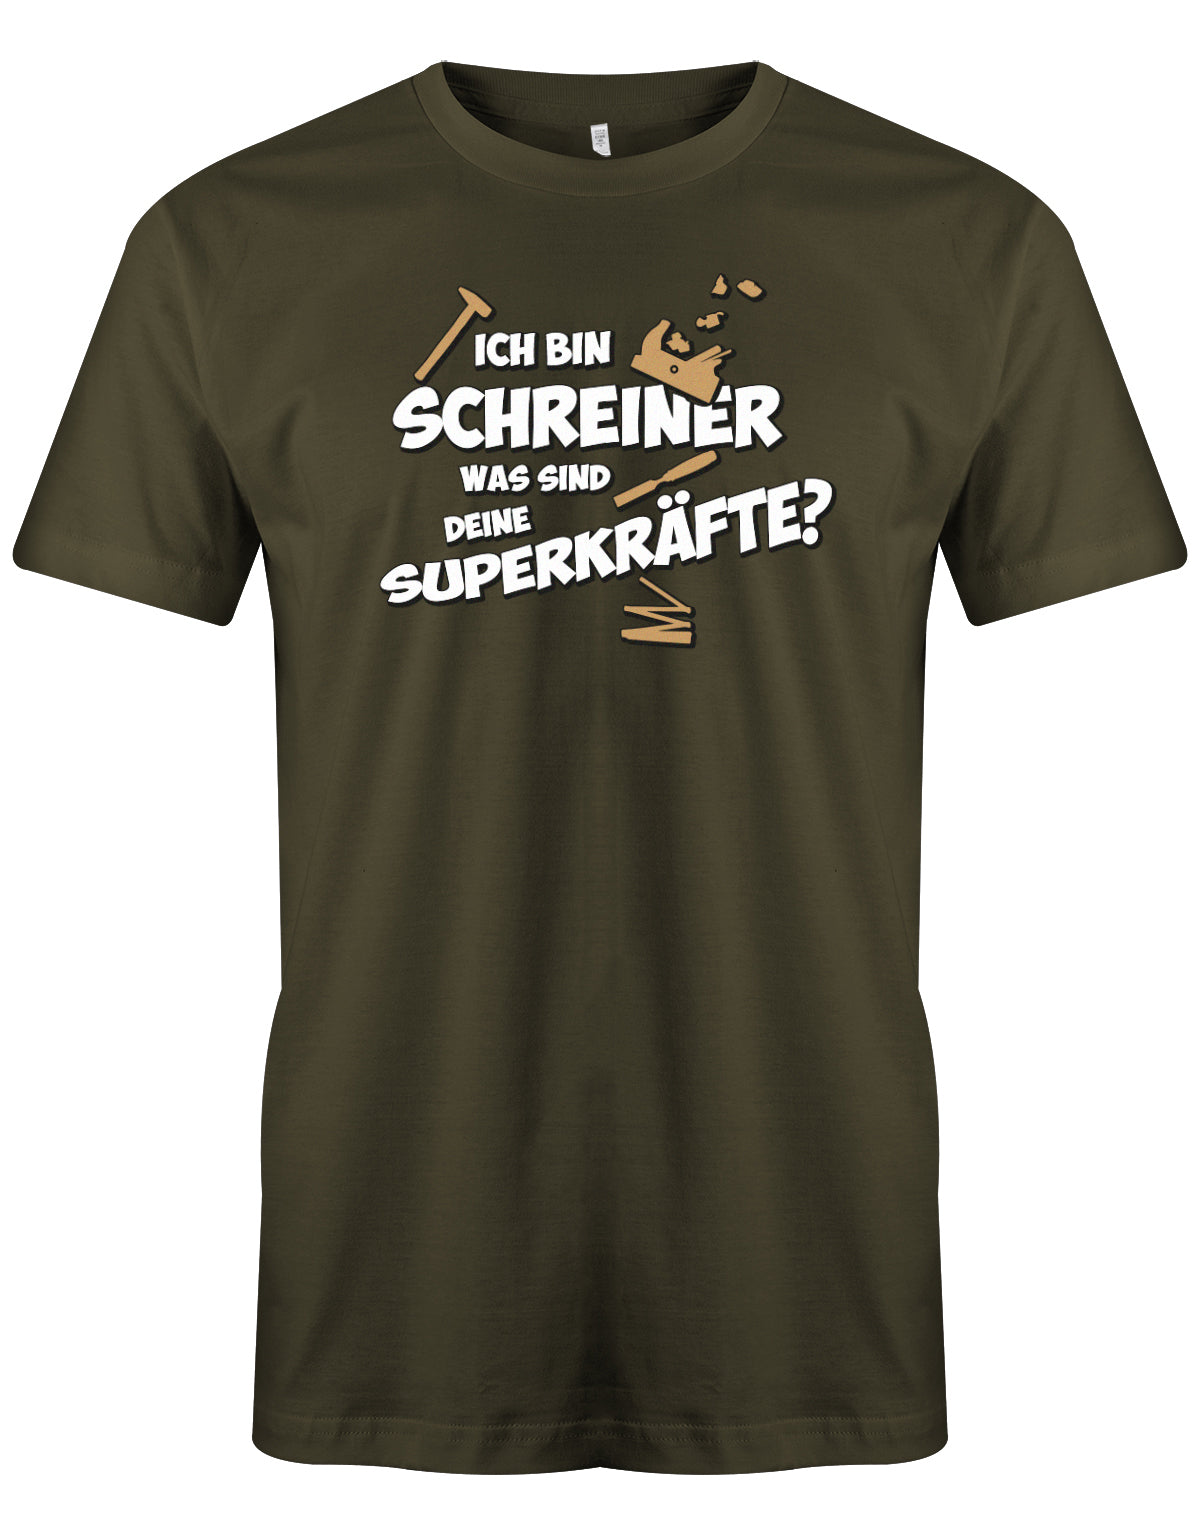 Schreiner und Tischler Shirt. Männer Shirt bedruckt mit: Ich bin Schreiner was sind deine Superkräfte? Army